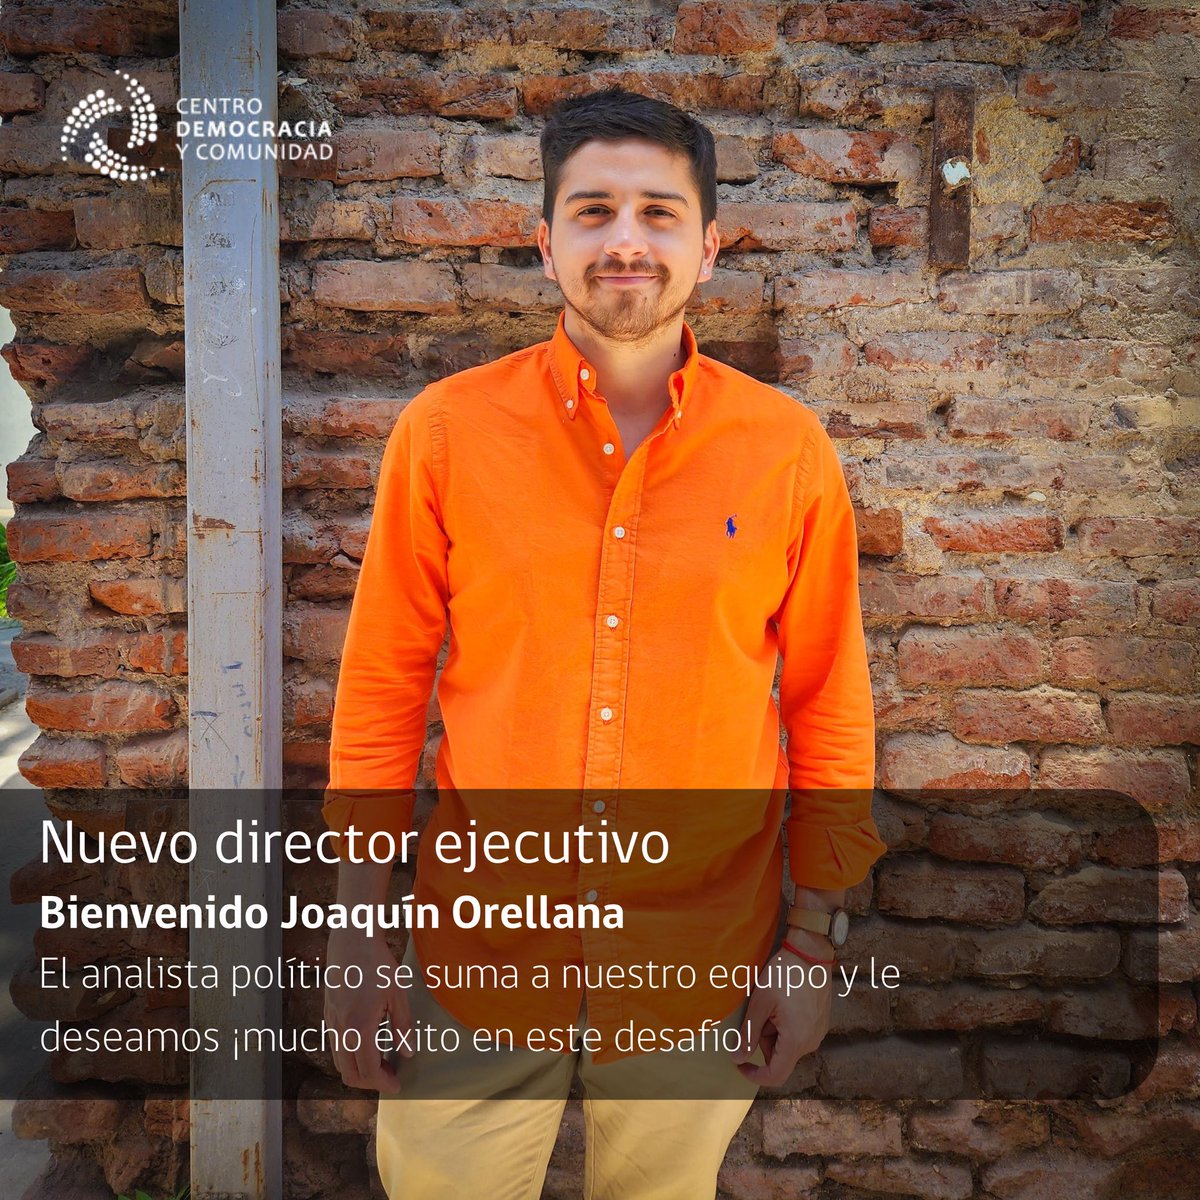 ¡Le damos la bienvenida a nuestro nuevo director ejecutivo @Joaco_orellana! 📣 ¡Bienvenido nuevamente al equipo! 🎉